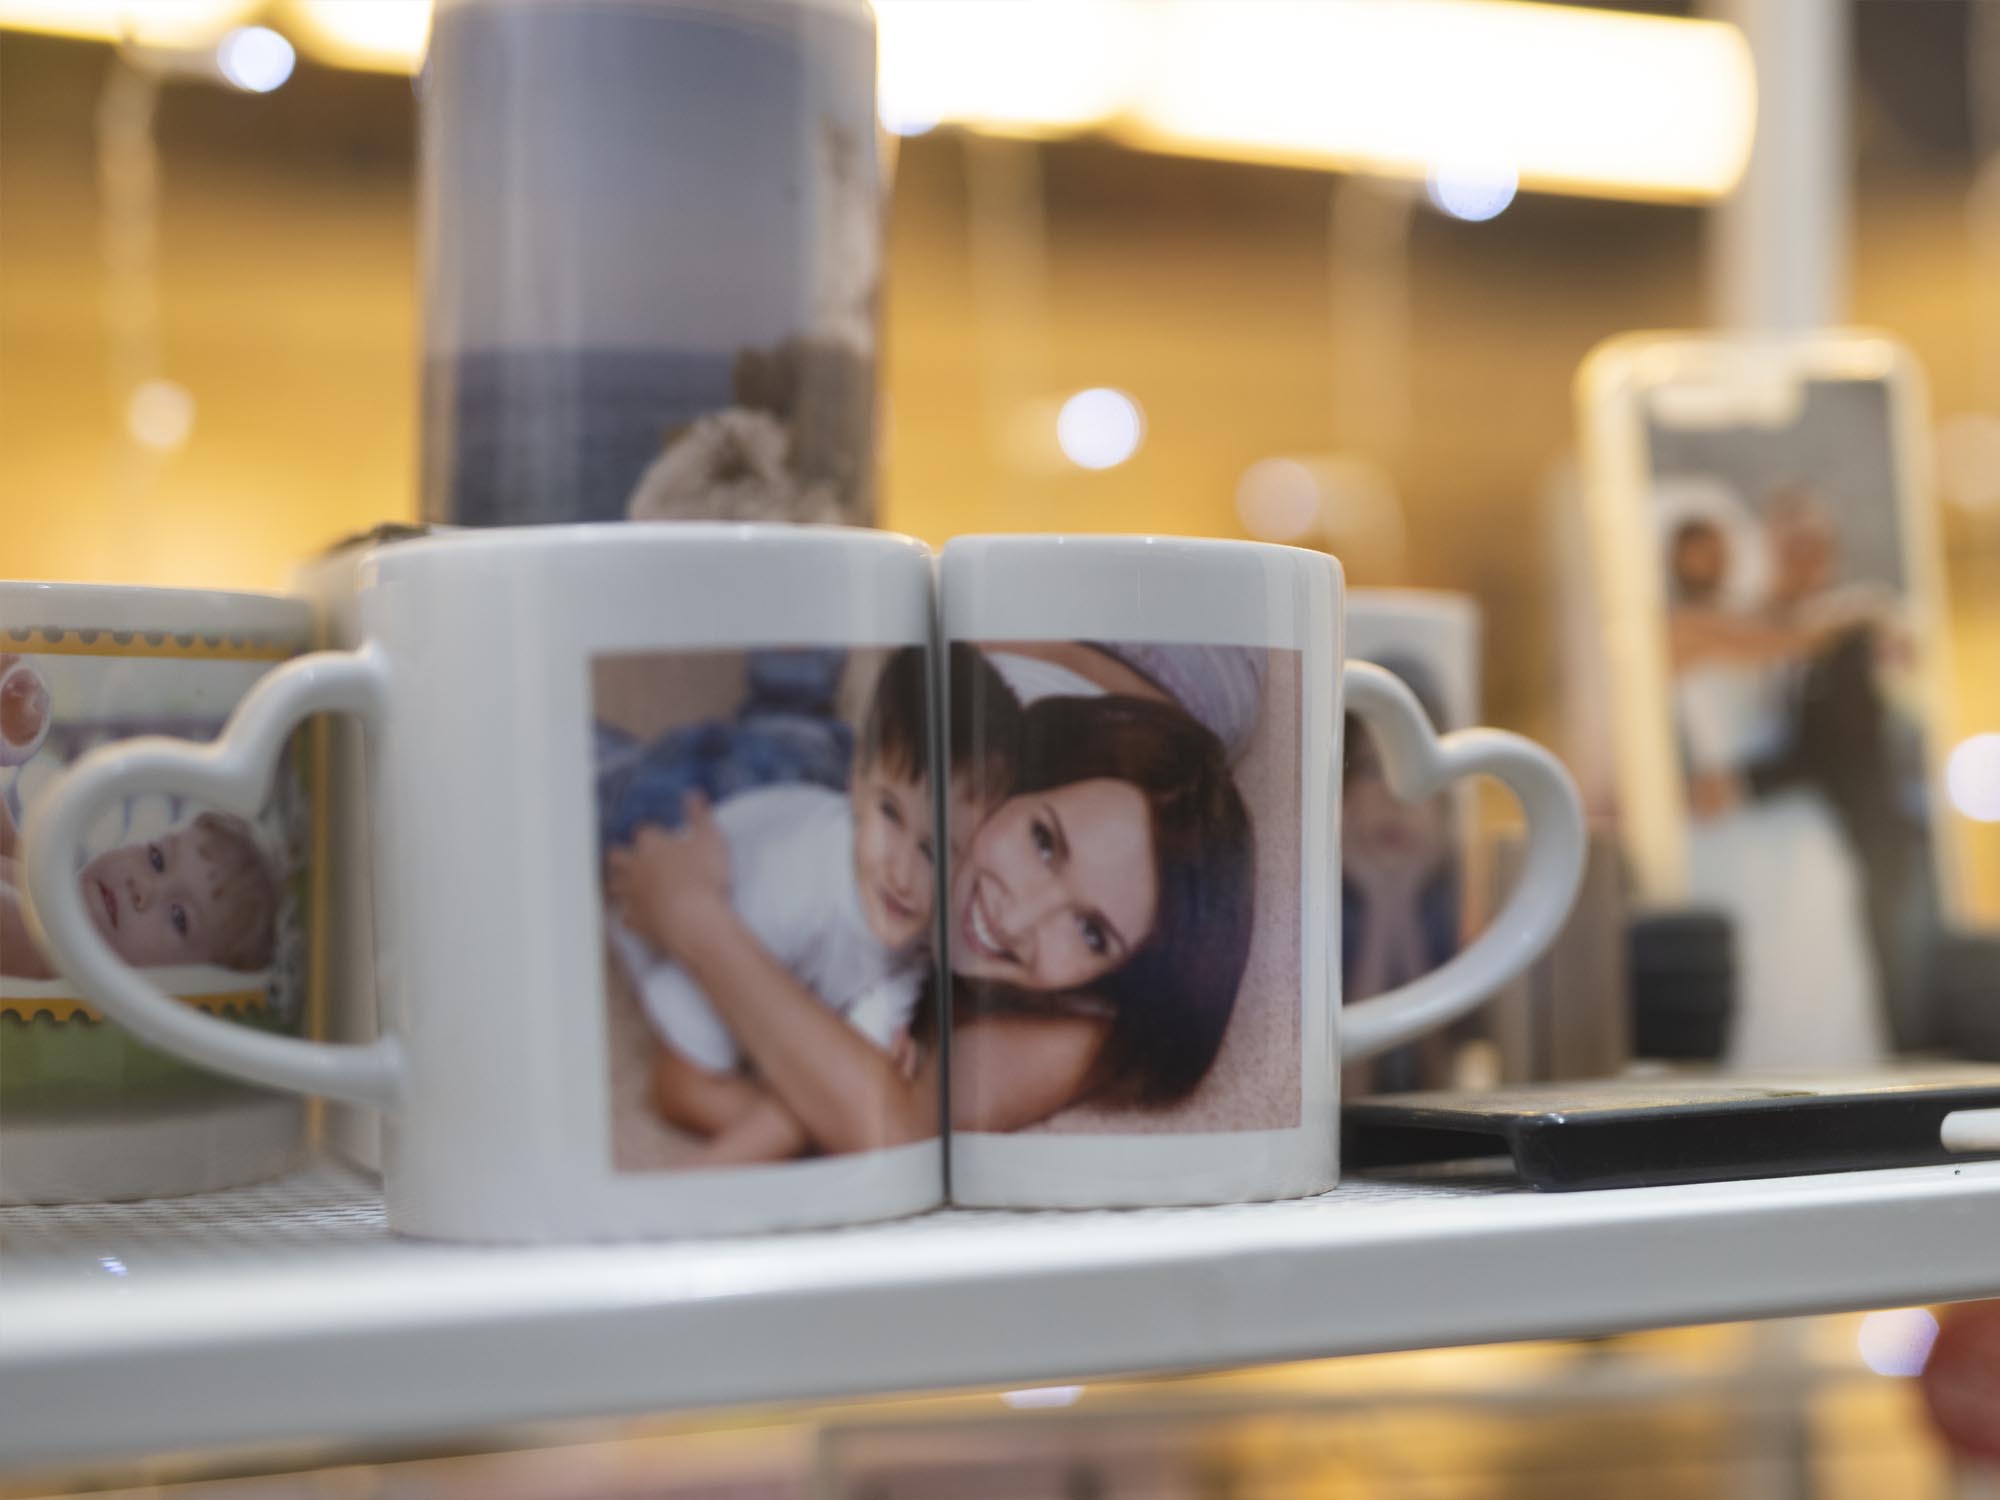 due tazze mug da caffelatte personalizzate con le foto di mamma e figlio e con i manici a forma di cuore